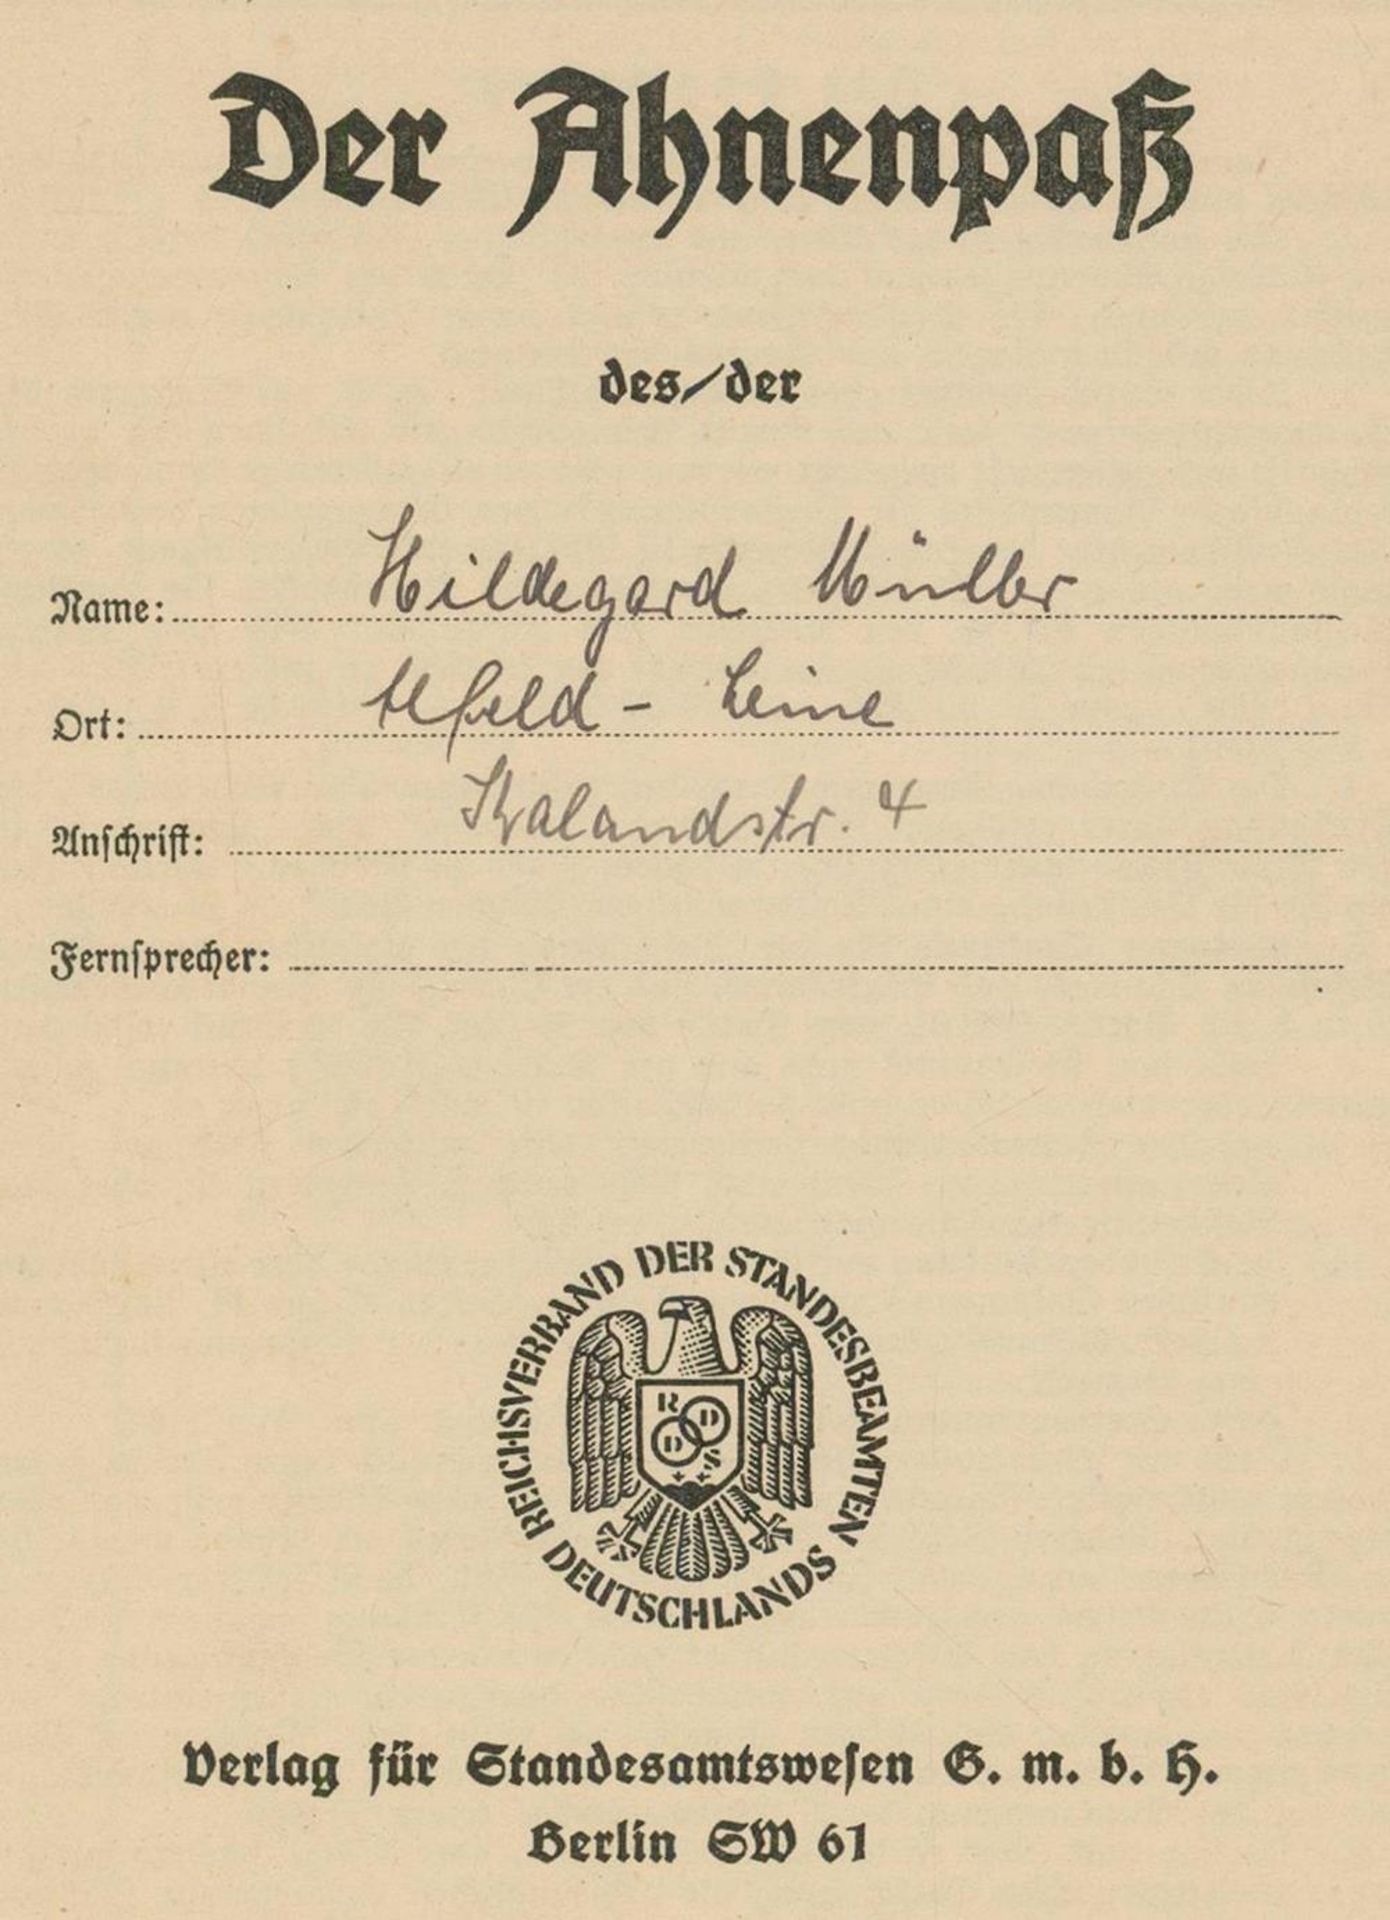 Ahnentafeln.Umfangreiche Sammlung von Ahnenpässen, Ahnentafeln und Urkunden. Um 1936-1945. In 2 mod.